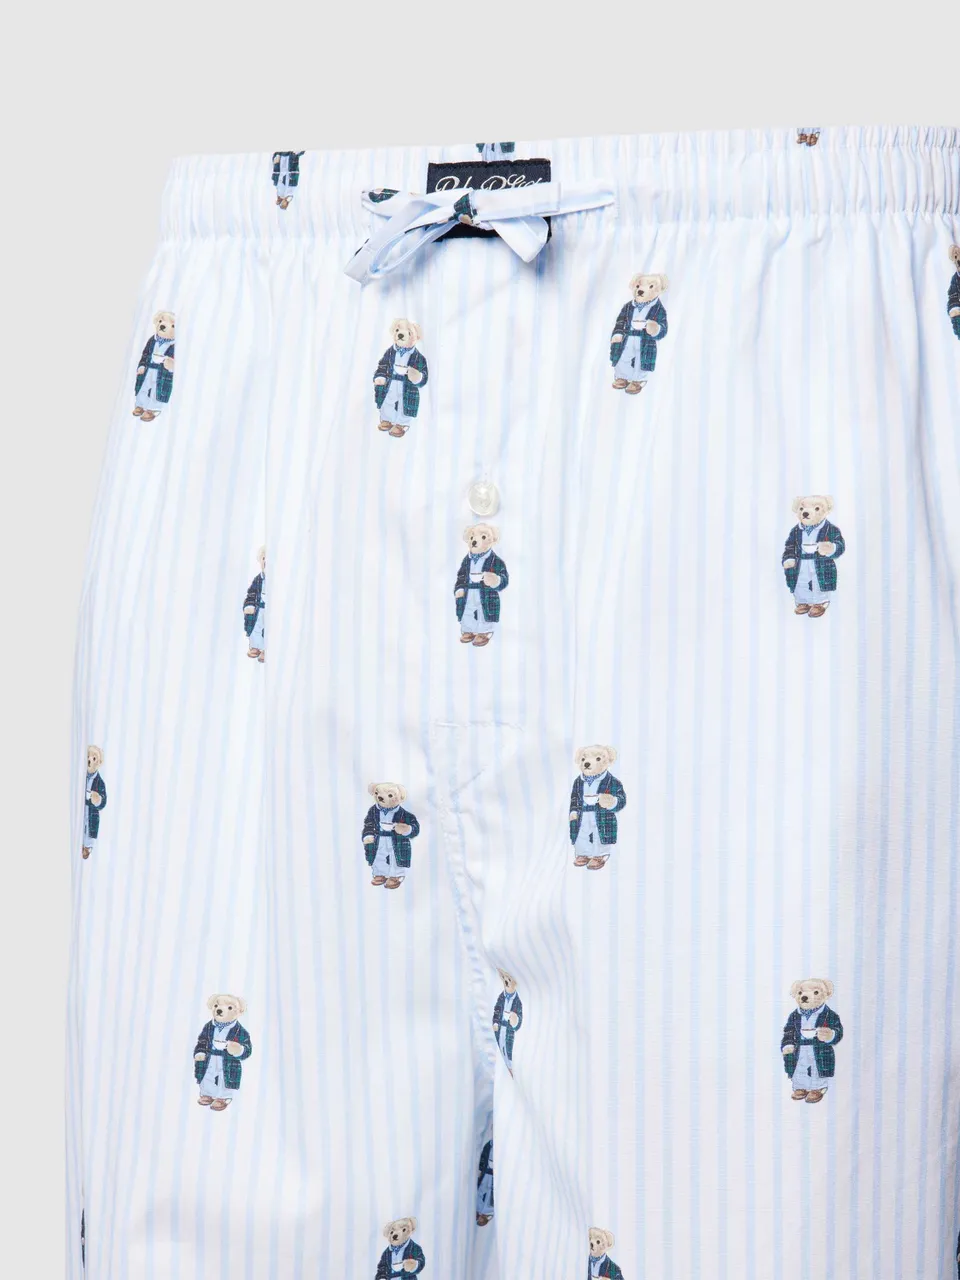 Pyjama-Hose mit Streifenmuster